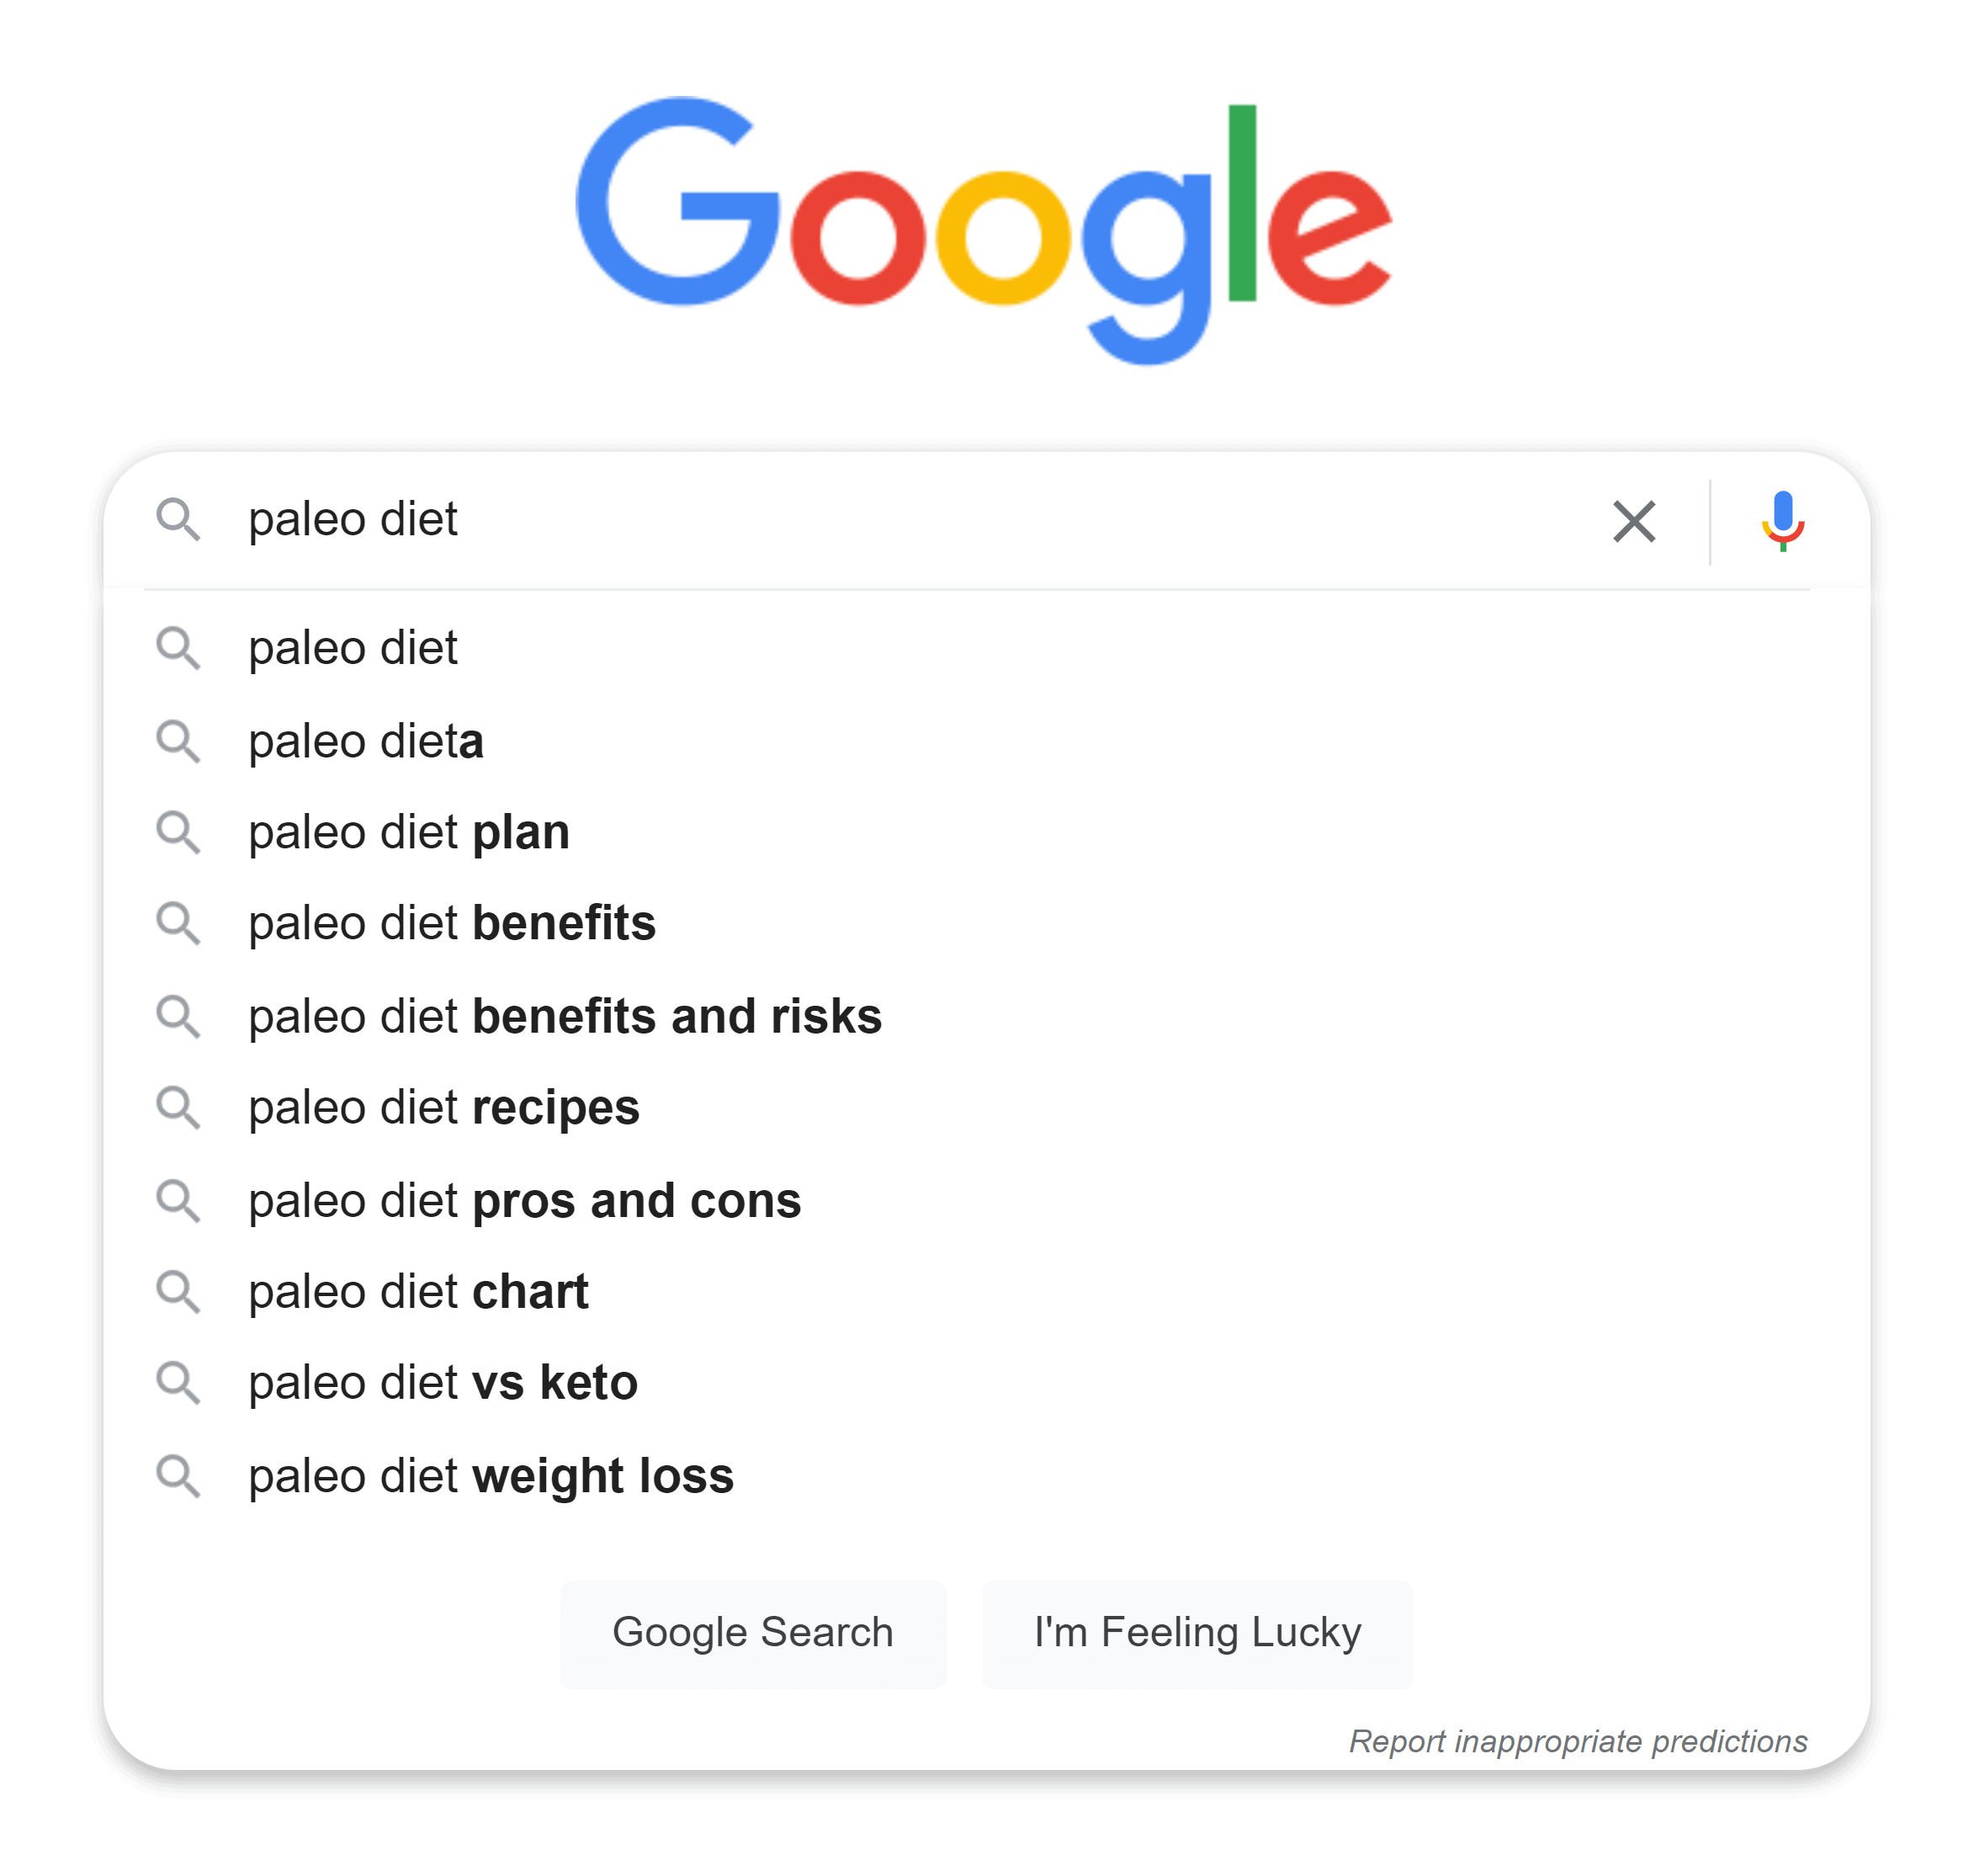 Google Suggest – Paleo diet